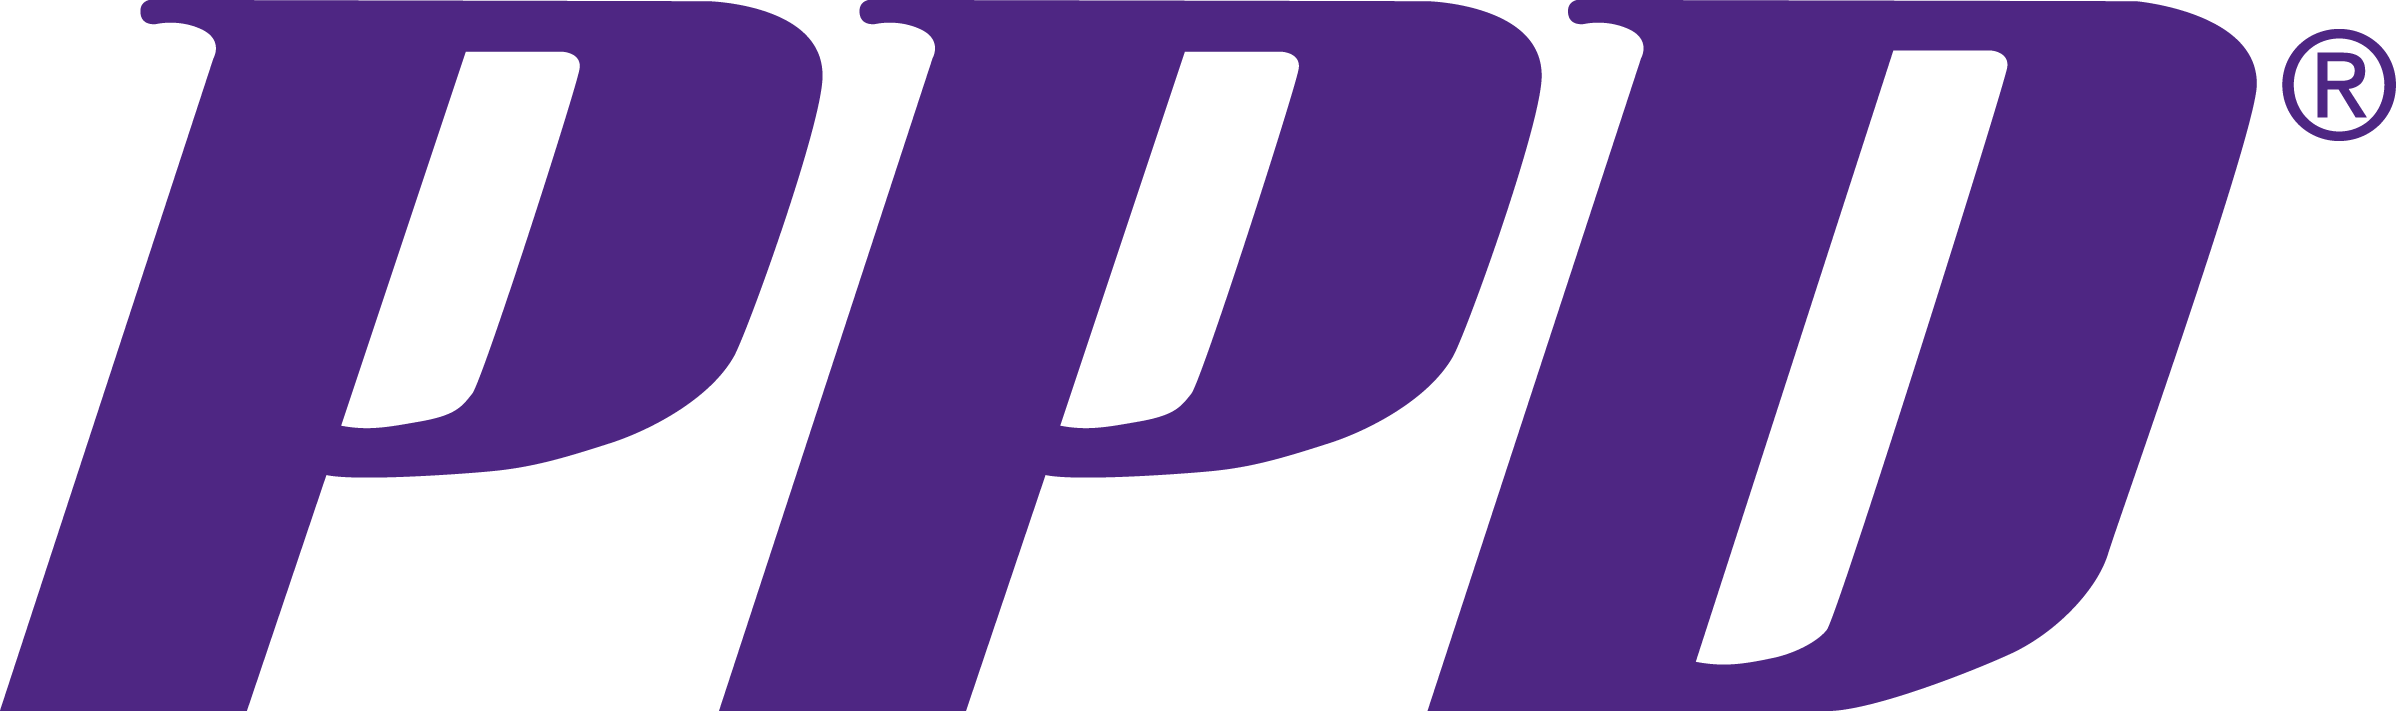 PPD Logo PMS 268